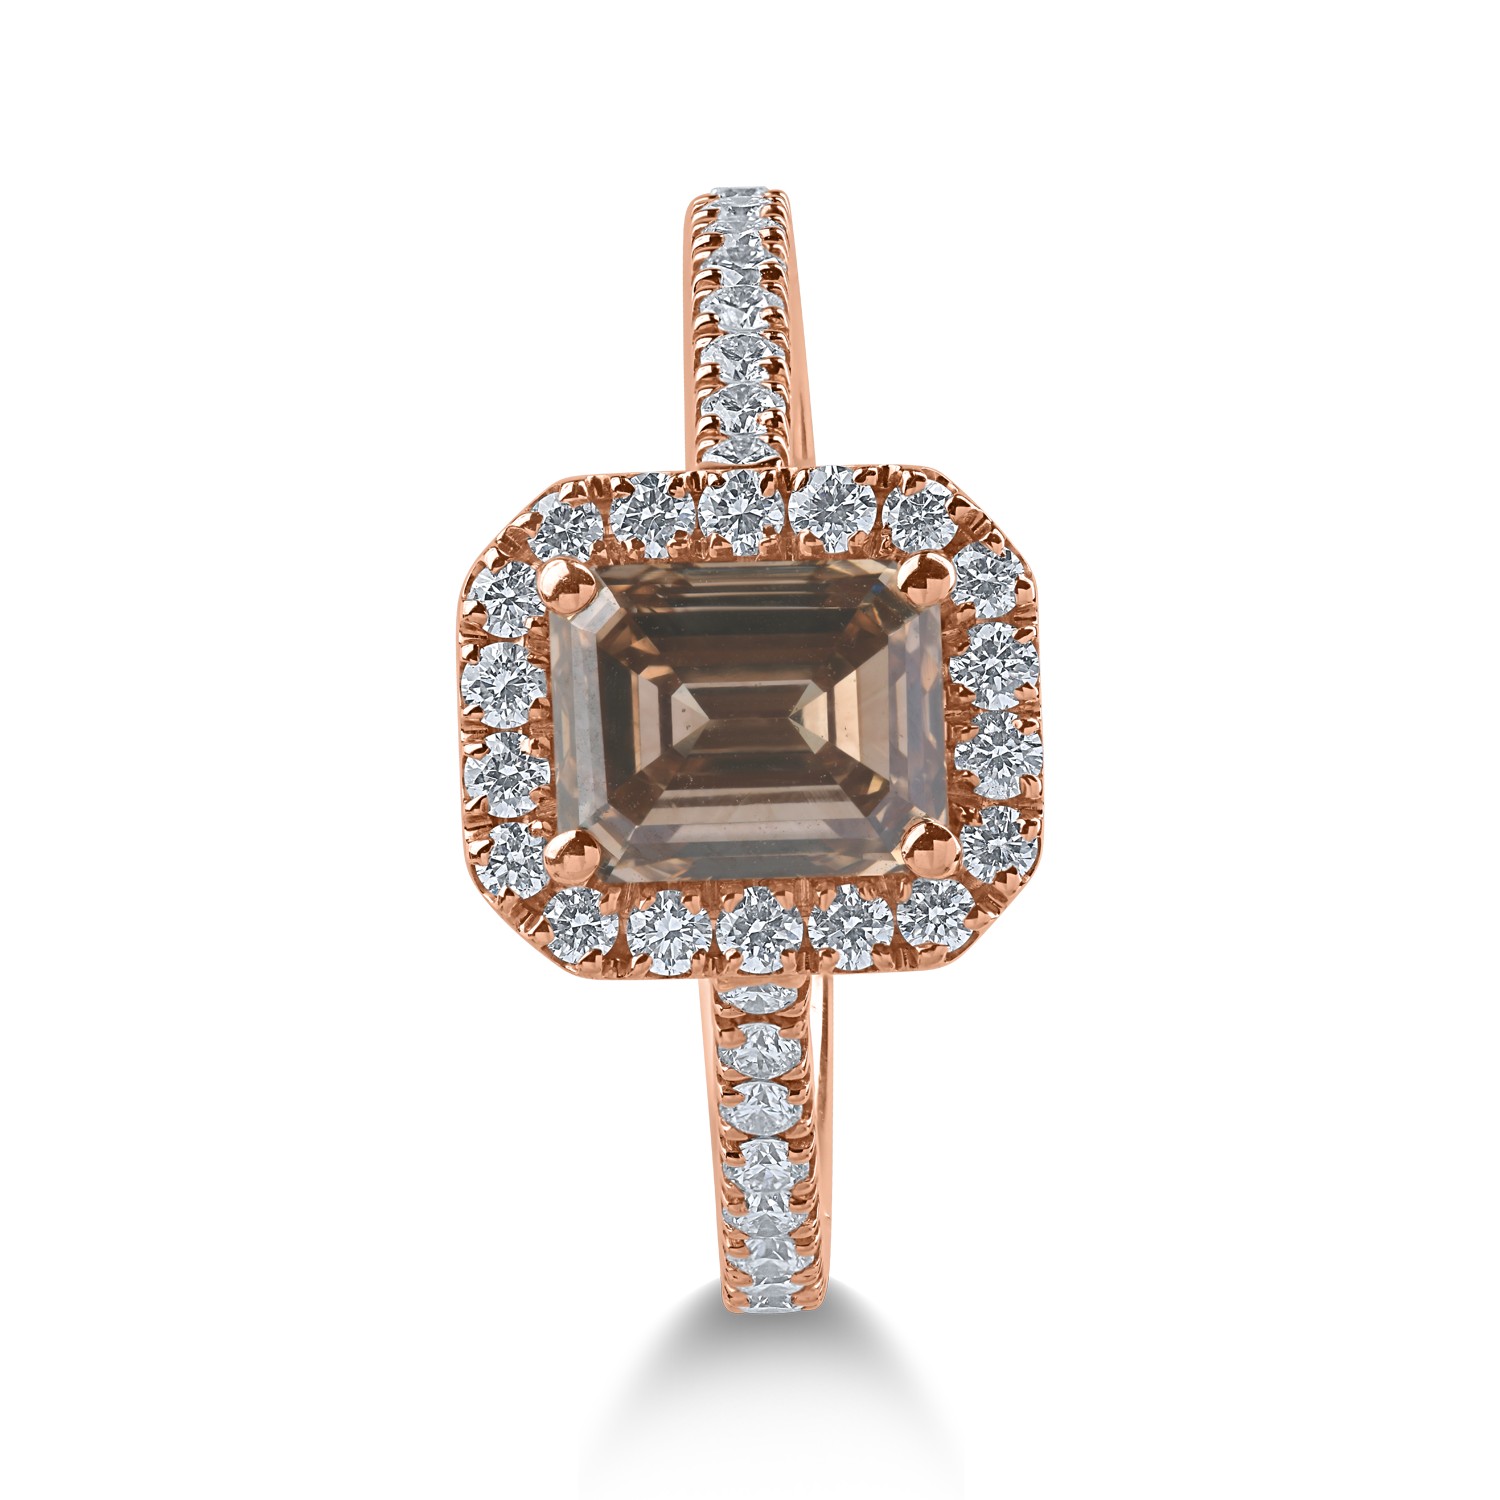 Inel din aur roz cu diamant maro de 1.52ct si diamante transparente de 0.54ct